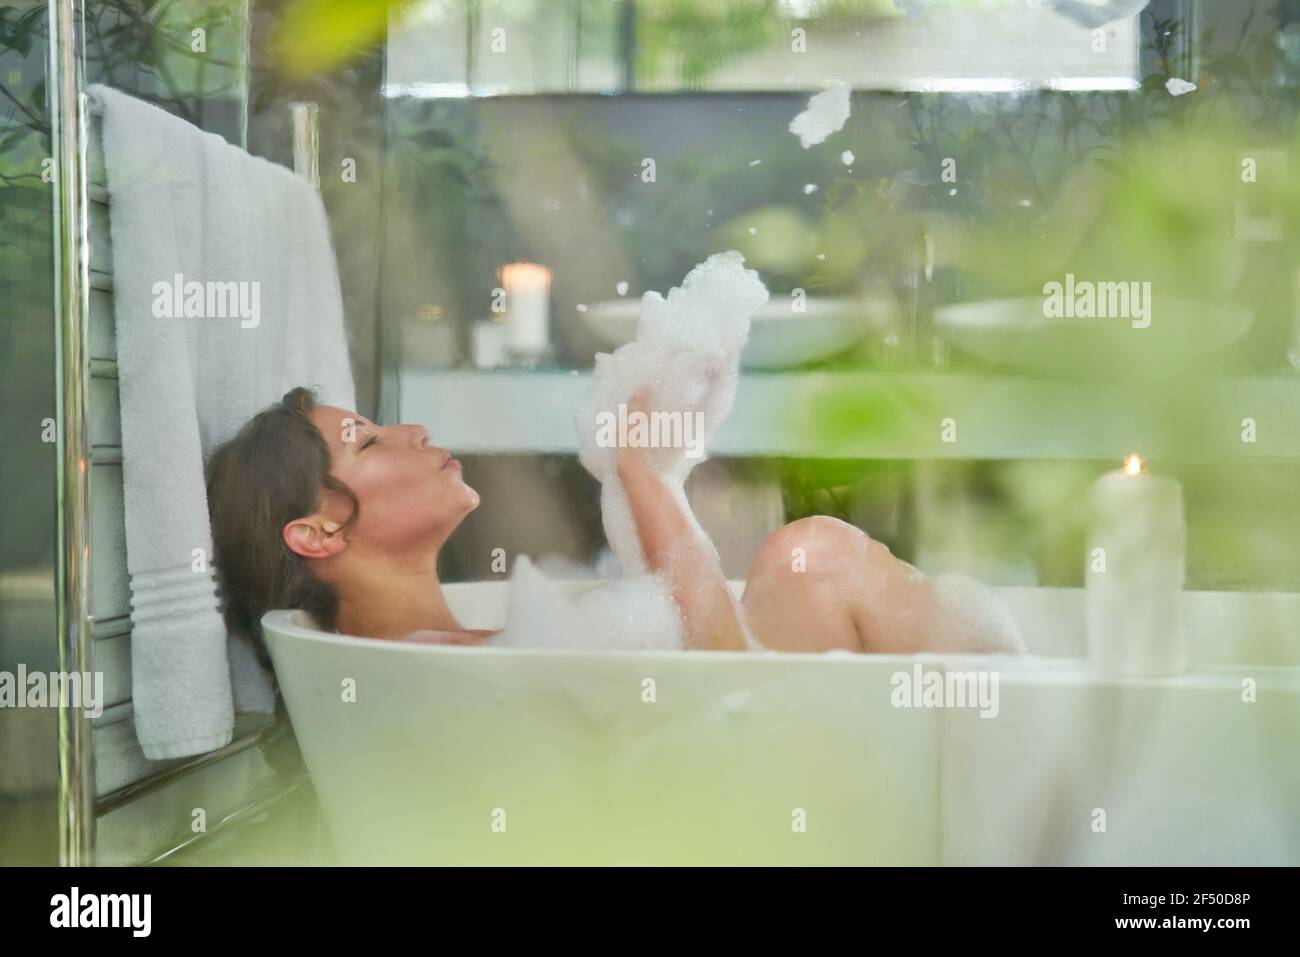 Femme joueur dans un bain à bulles dans une baignoire luxueuse salle de bains Banque D'Images